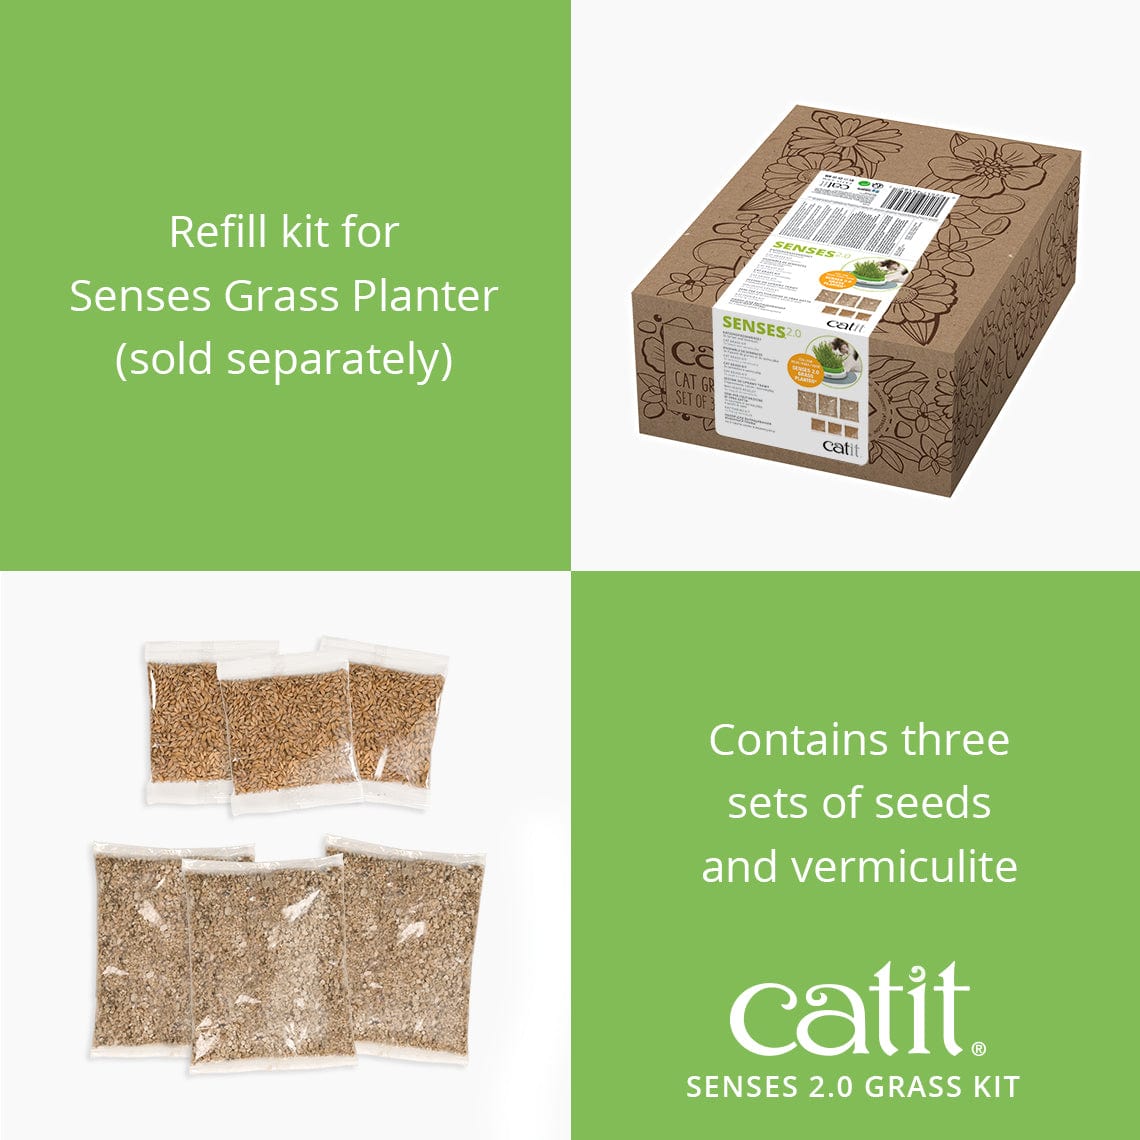 Catit Senses Cat Grass Kit